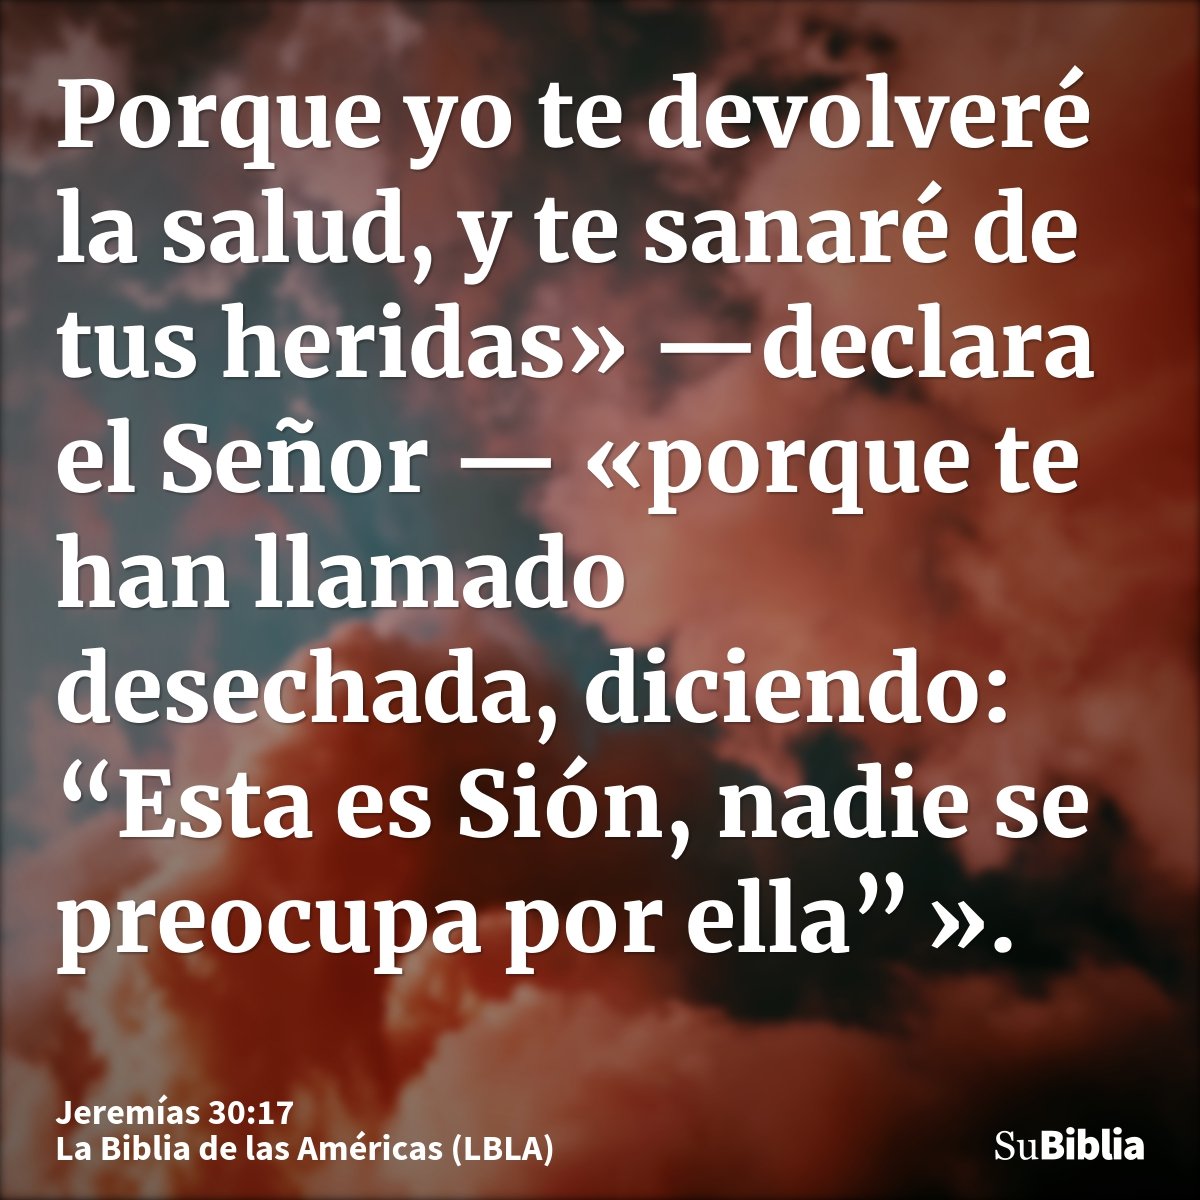 Porque yo te devolveré la salud, y te sanaré de tus heridas» —declara el Señor — «porque te han llamado desechada, diciendo: “Esta es Sión, nadie se preocupa po...